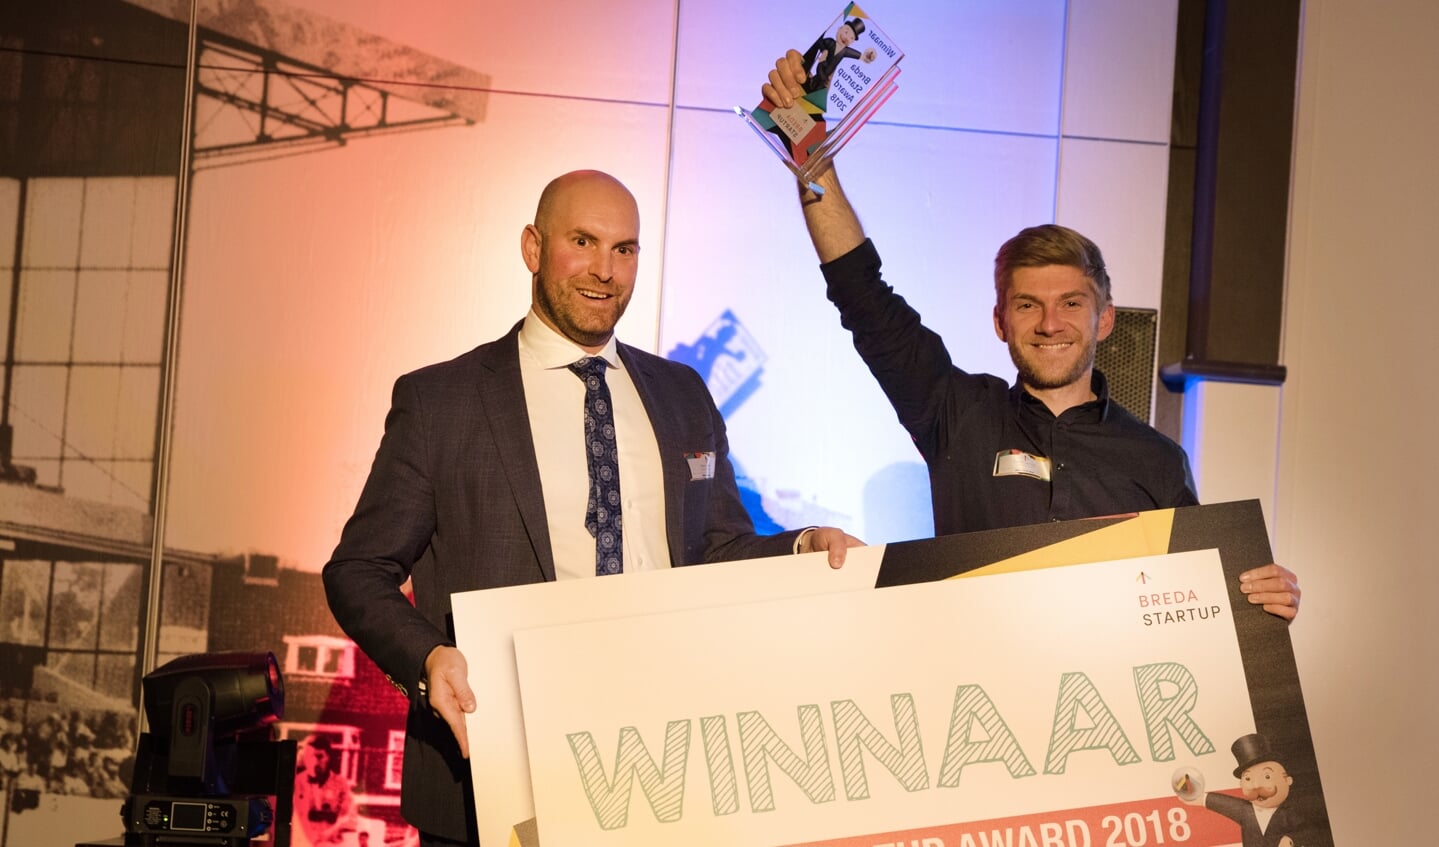 Wethouder Boaz Adank reikt Tymen van Dyl de Breda Startup Award uit.